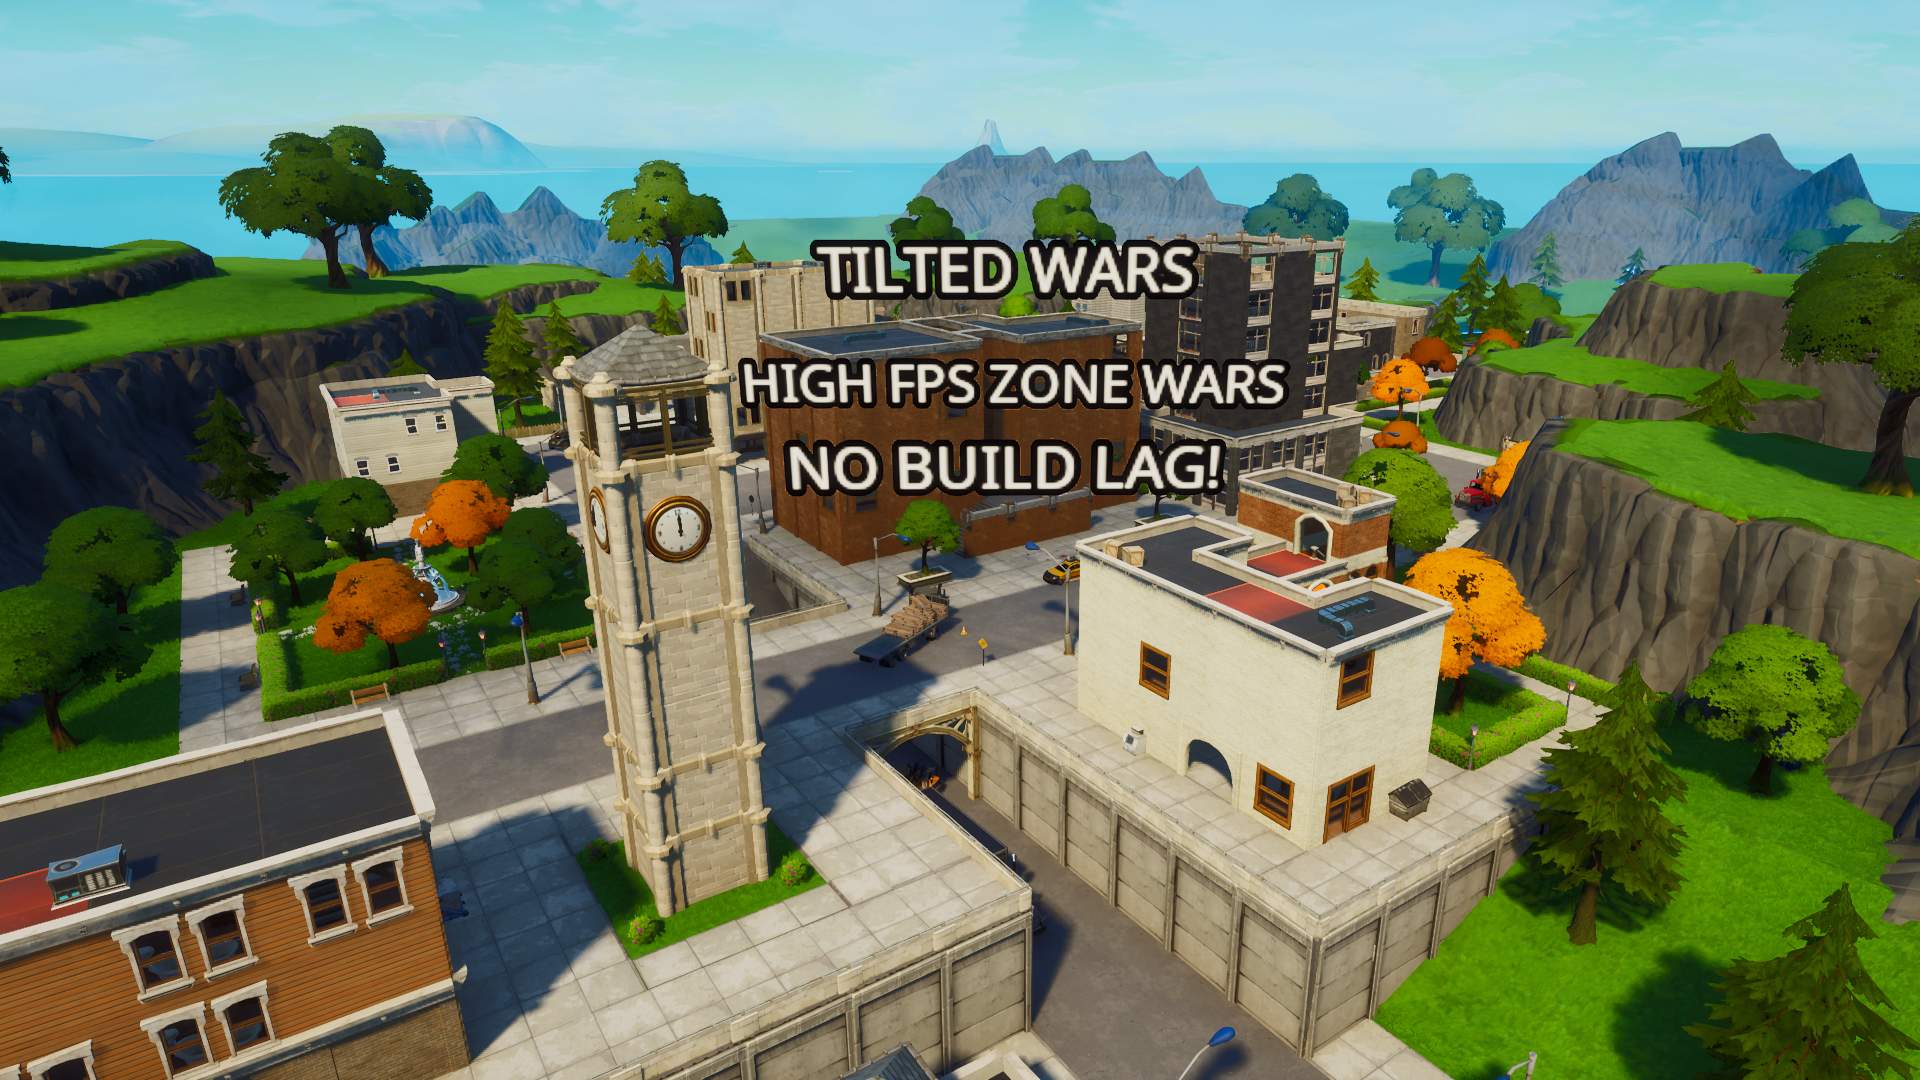 TILTED WARS (HIGH FPS ZONE WARS)